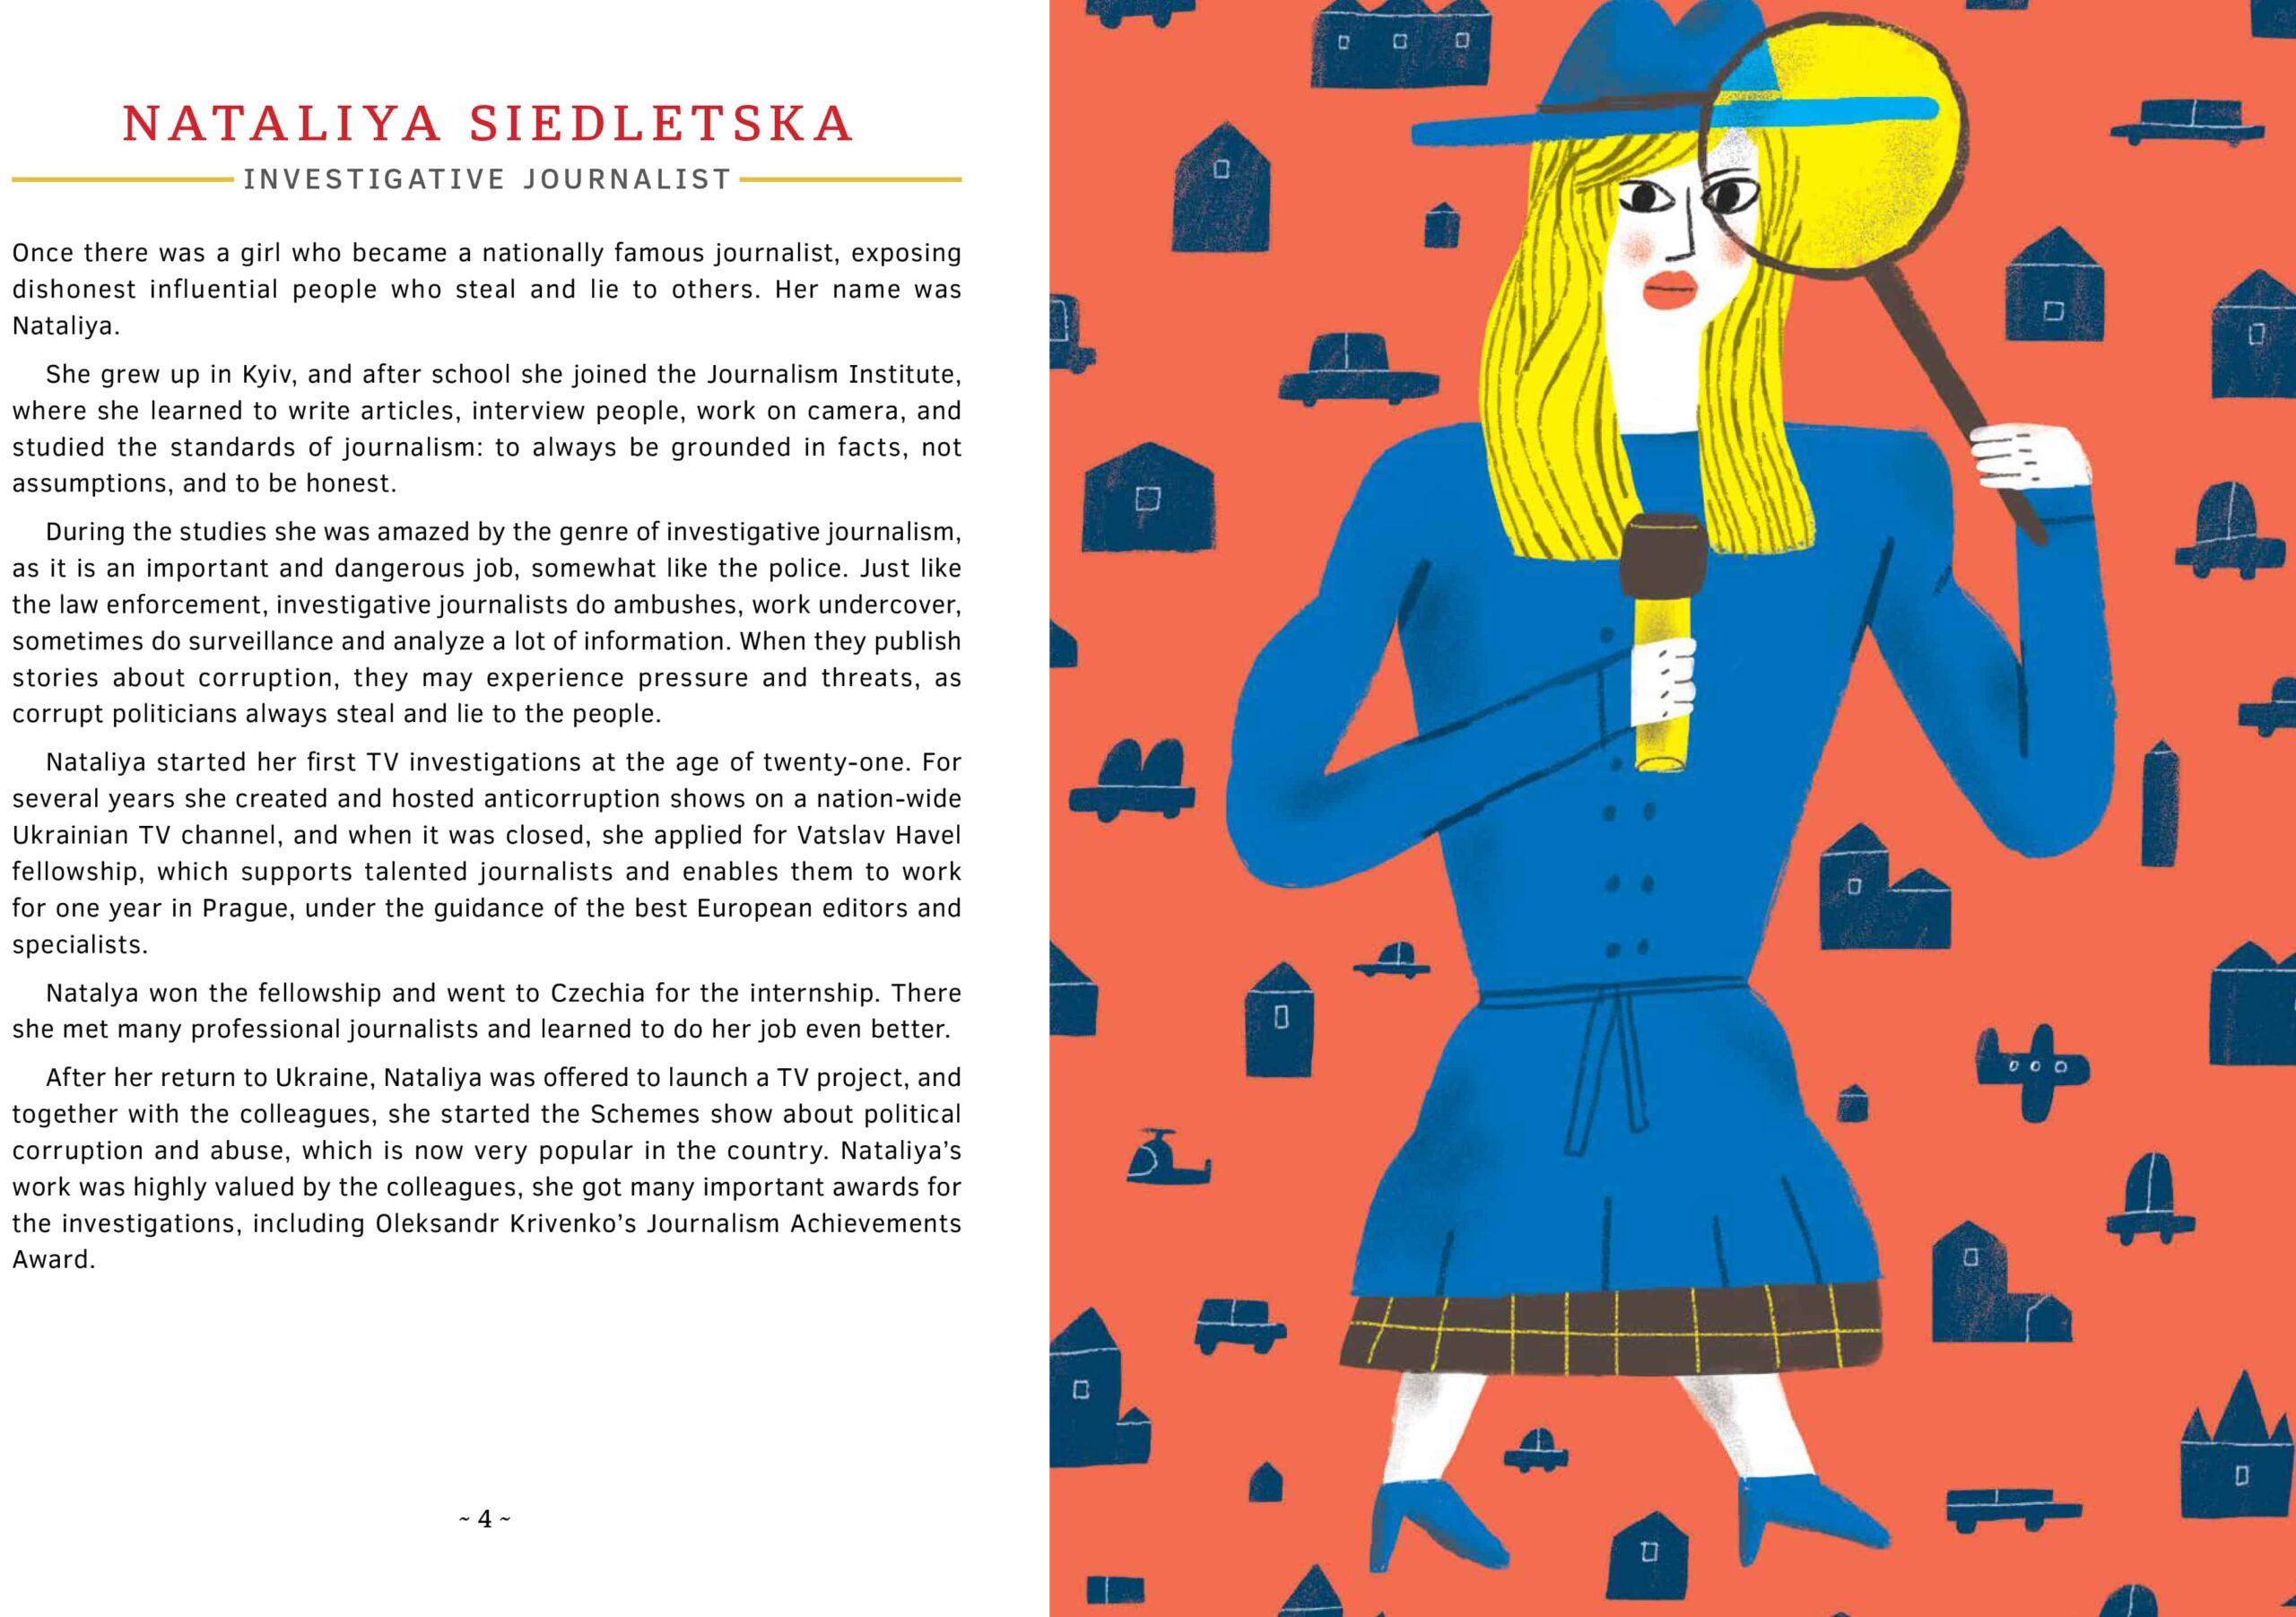 Text and illustration for Nataliya Siedletska